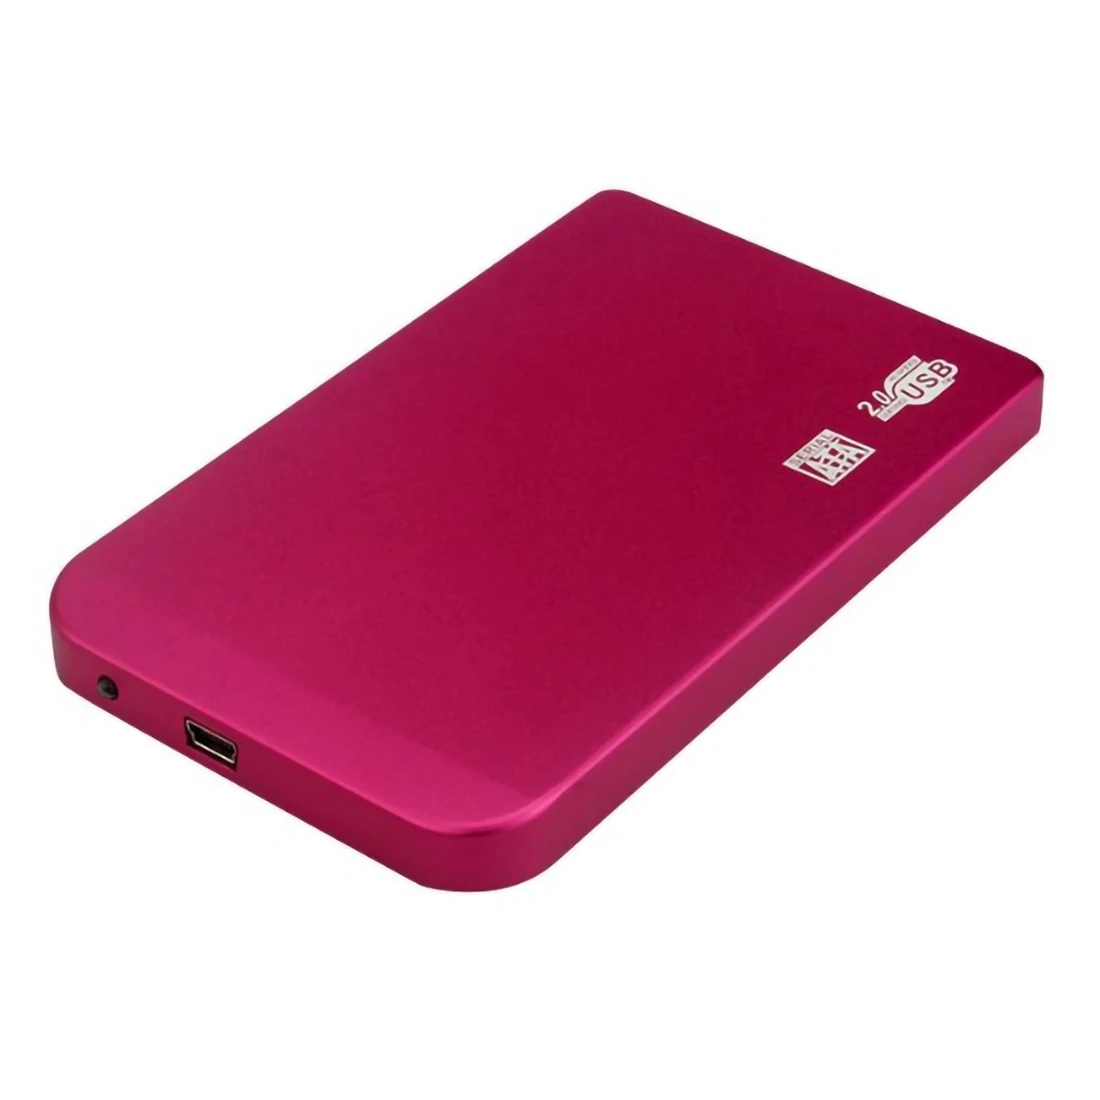 XT-XINTE Алюминий сплав SATA для мини USB 2,0 HDD чехол 2,5 дюймовый корпус жесткого диска Портативный внешний твердотельный накопитель коробка Поддержка 2 ТБ